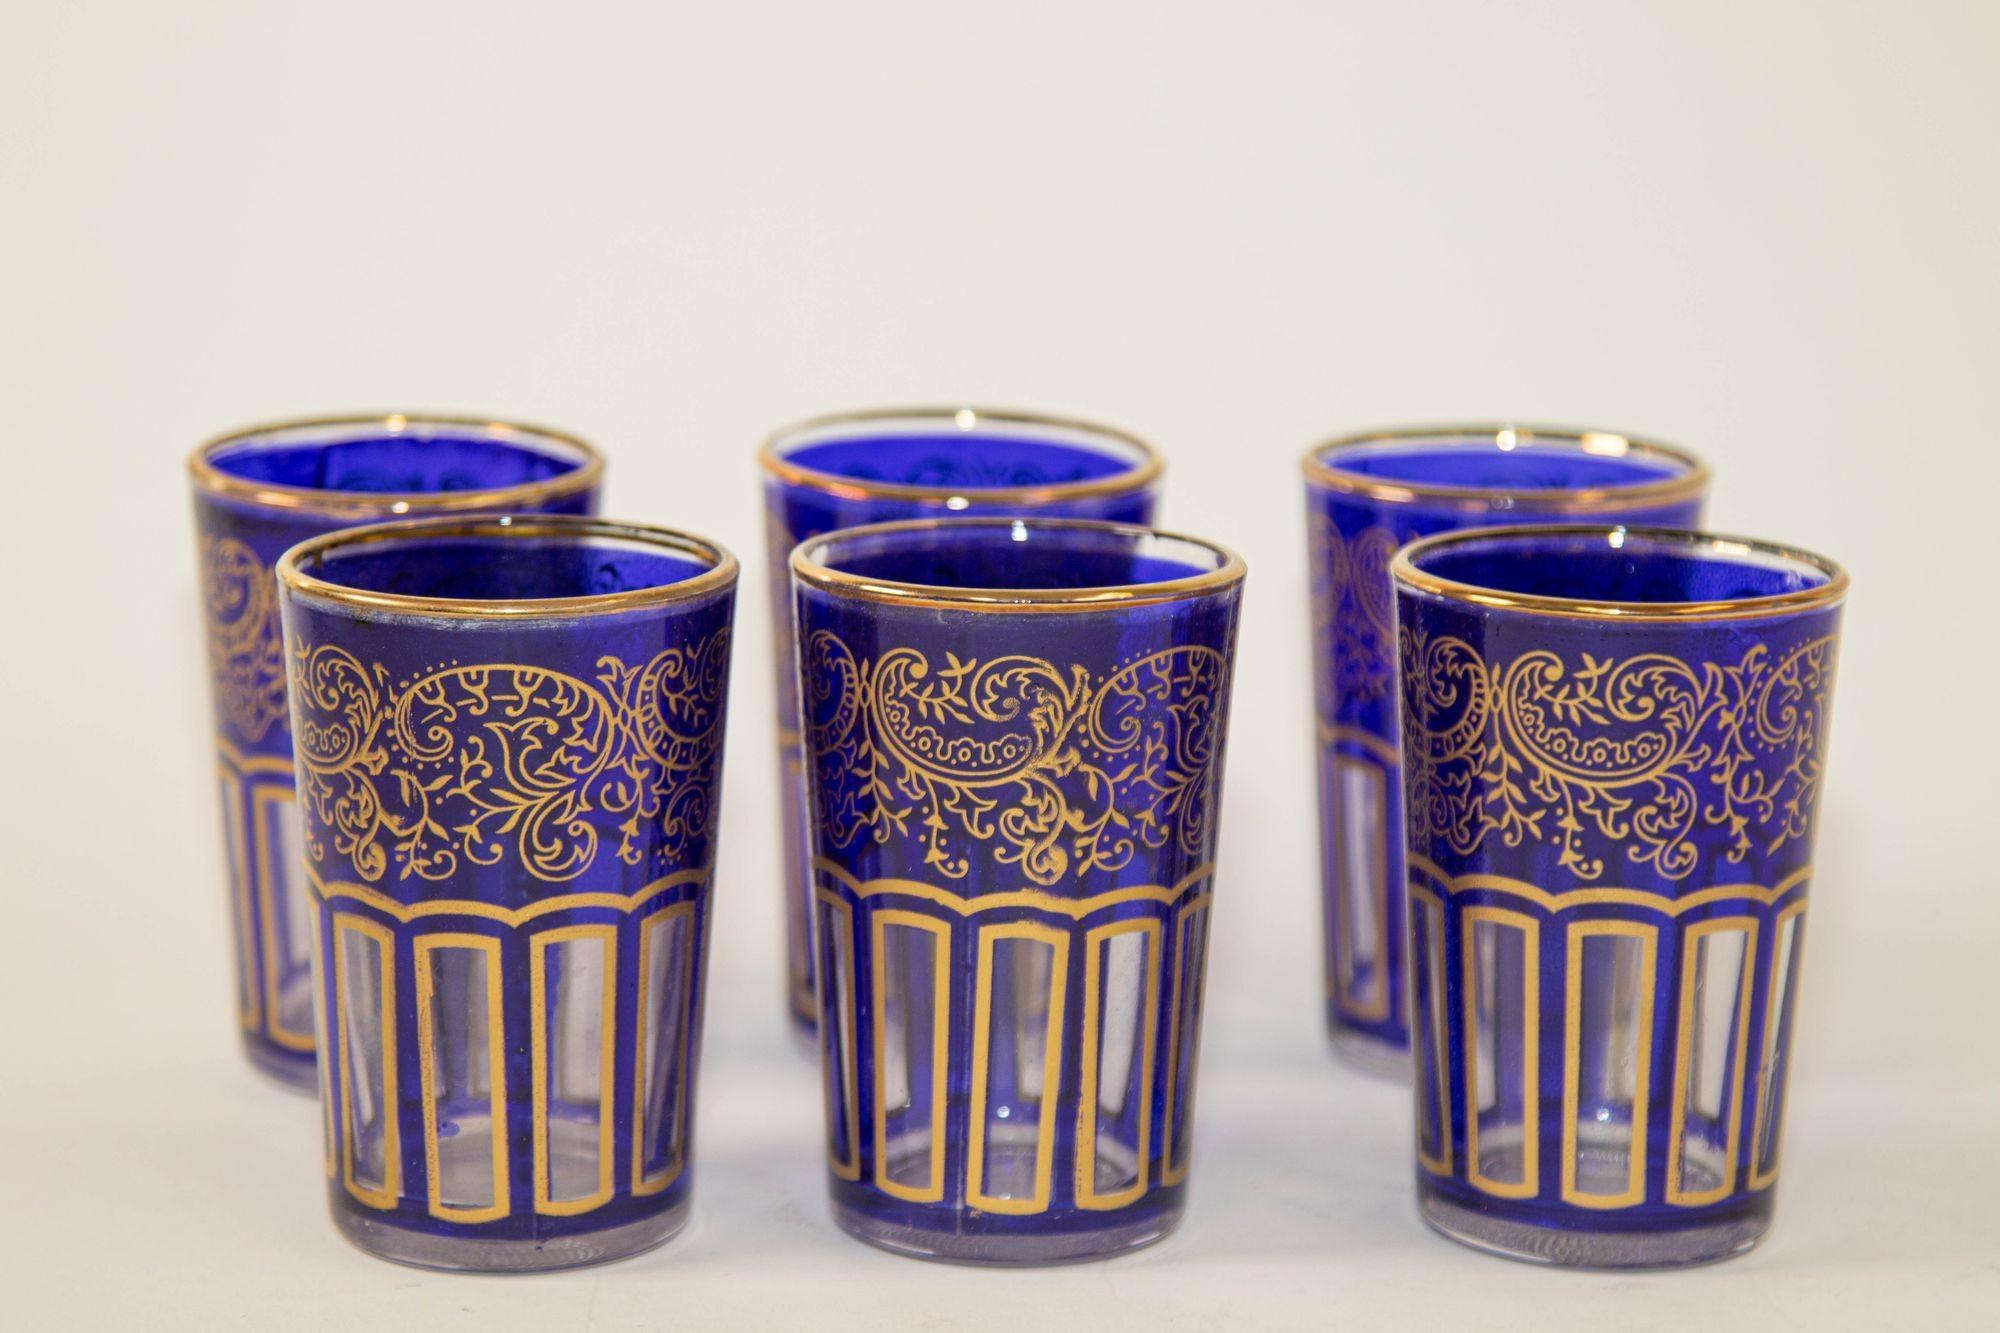 Petits verres marocains bleu royal avec design mauresque doré.
Lot de 6 verres à boire bleu cobalt royal avec motif Arabesque mauresque doré.
Ces magnifiques verres à boire marocains sont décorés d'une frise mauresque classique d'arabesques et de